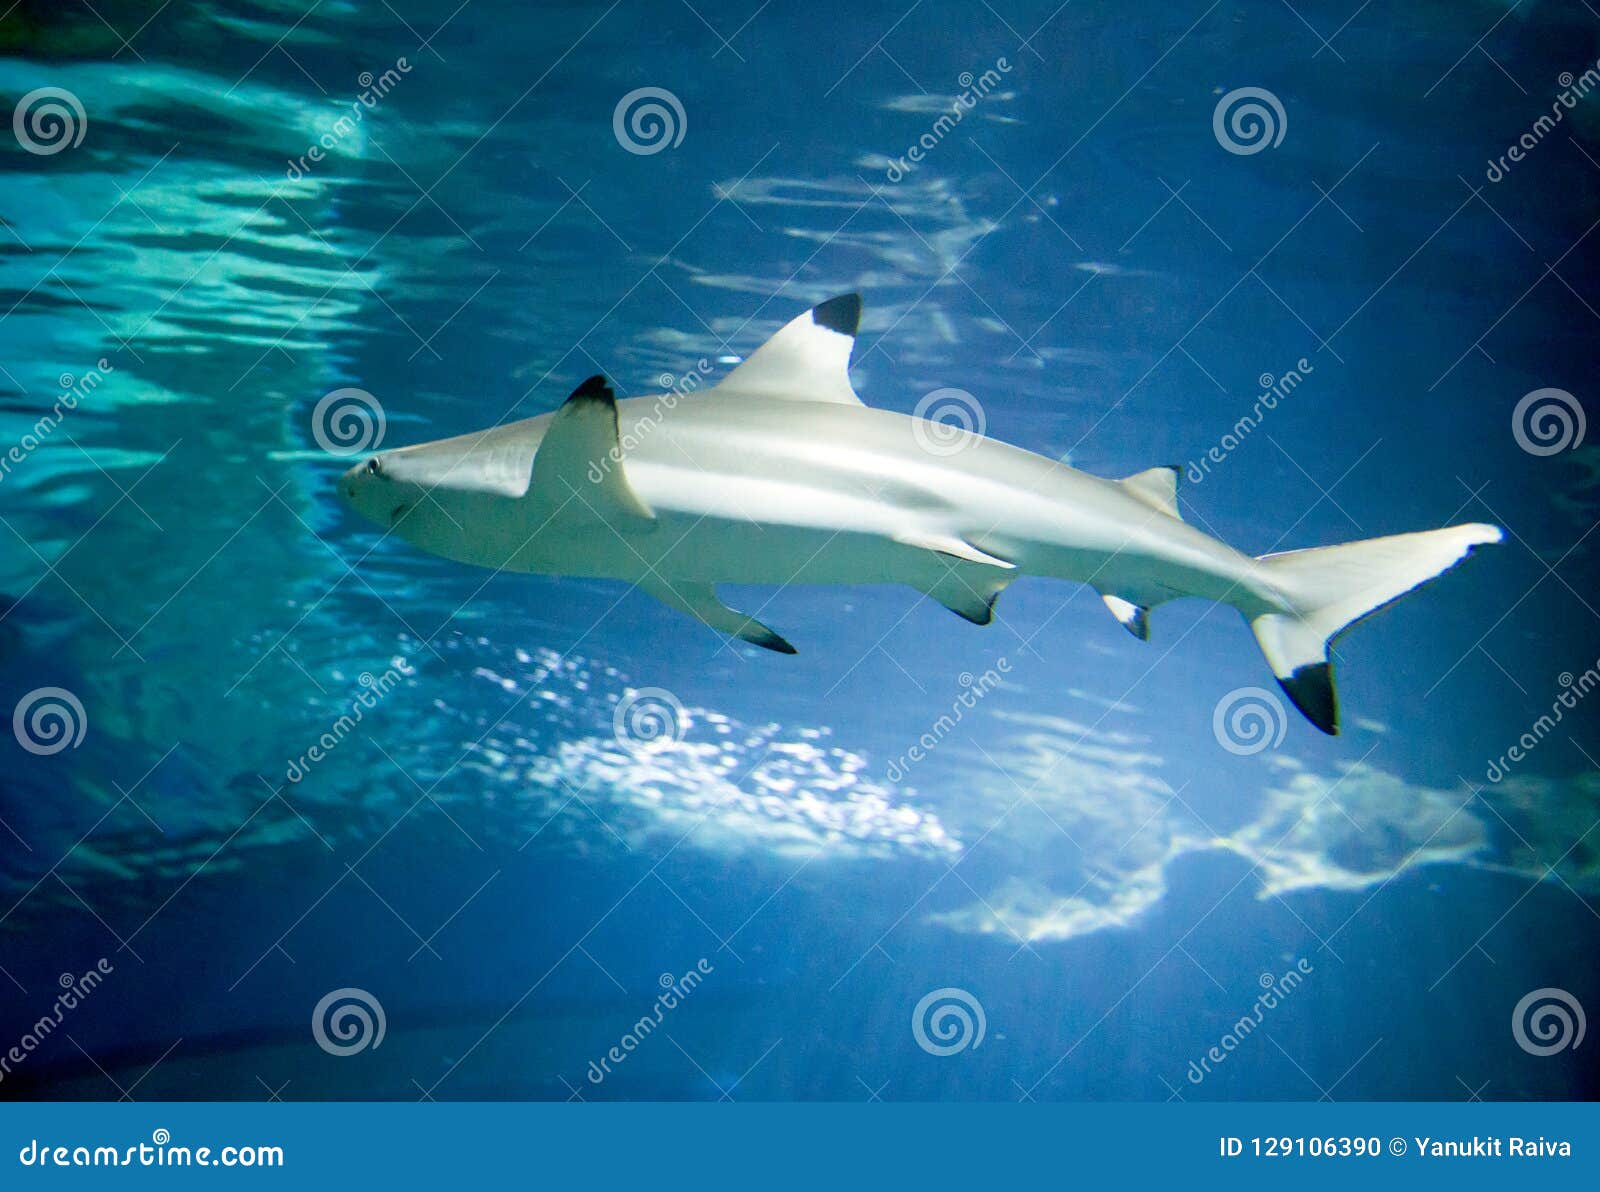 Baby Shark Underwater In Ocean Stock Photo Image Of Fauna Life